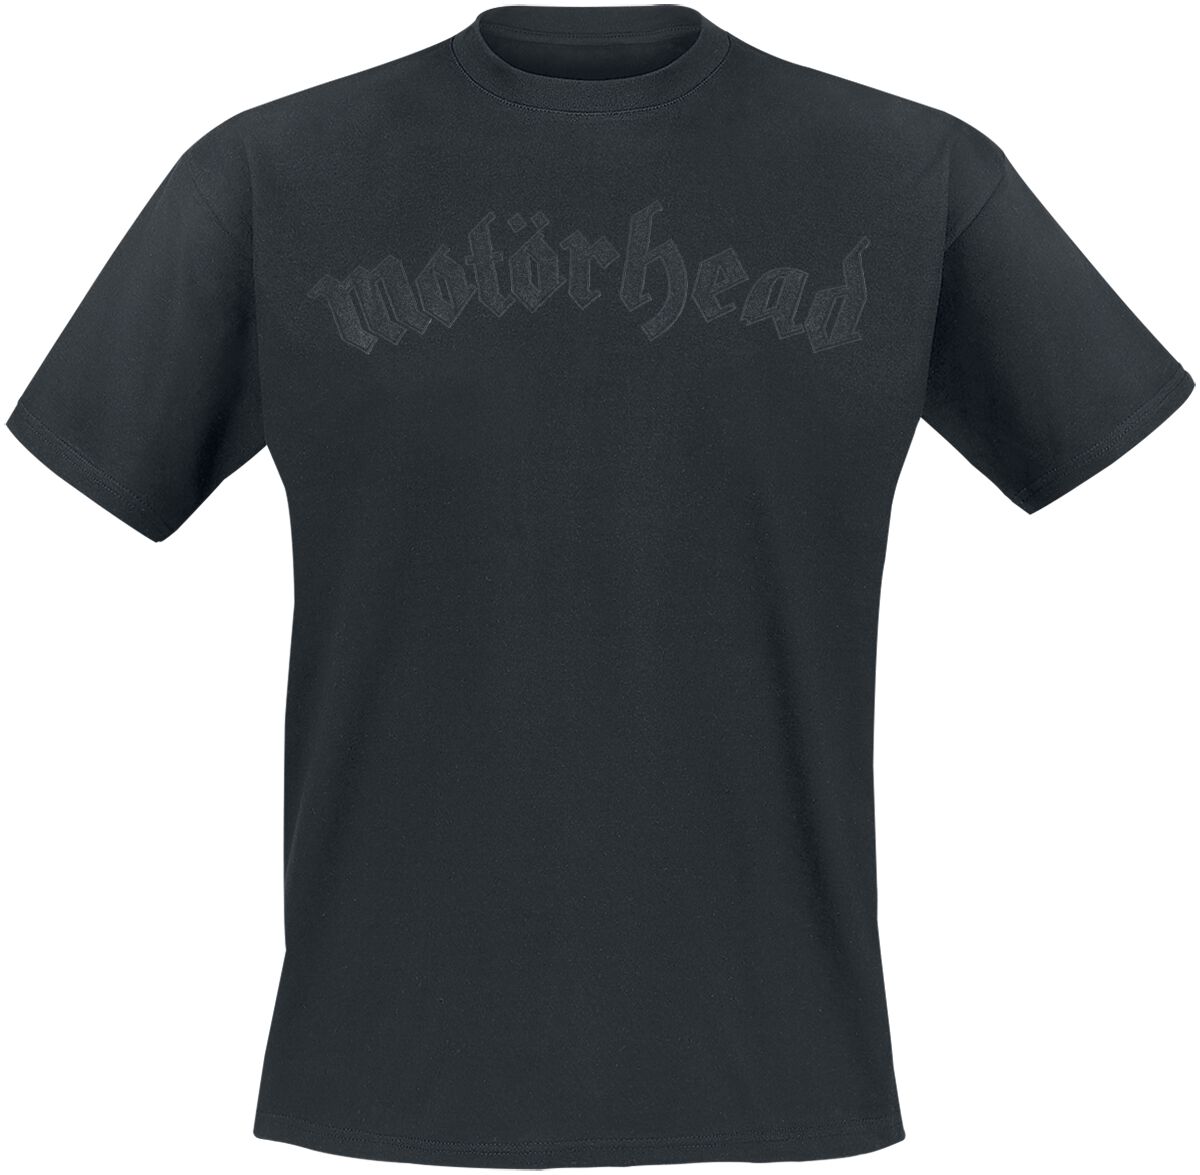 Motörhead T-Shirt - Black On Black Logo - S bis 4XL - für Männer - Größe S - schwarz  - Lizenziertes Merchandise!